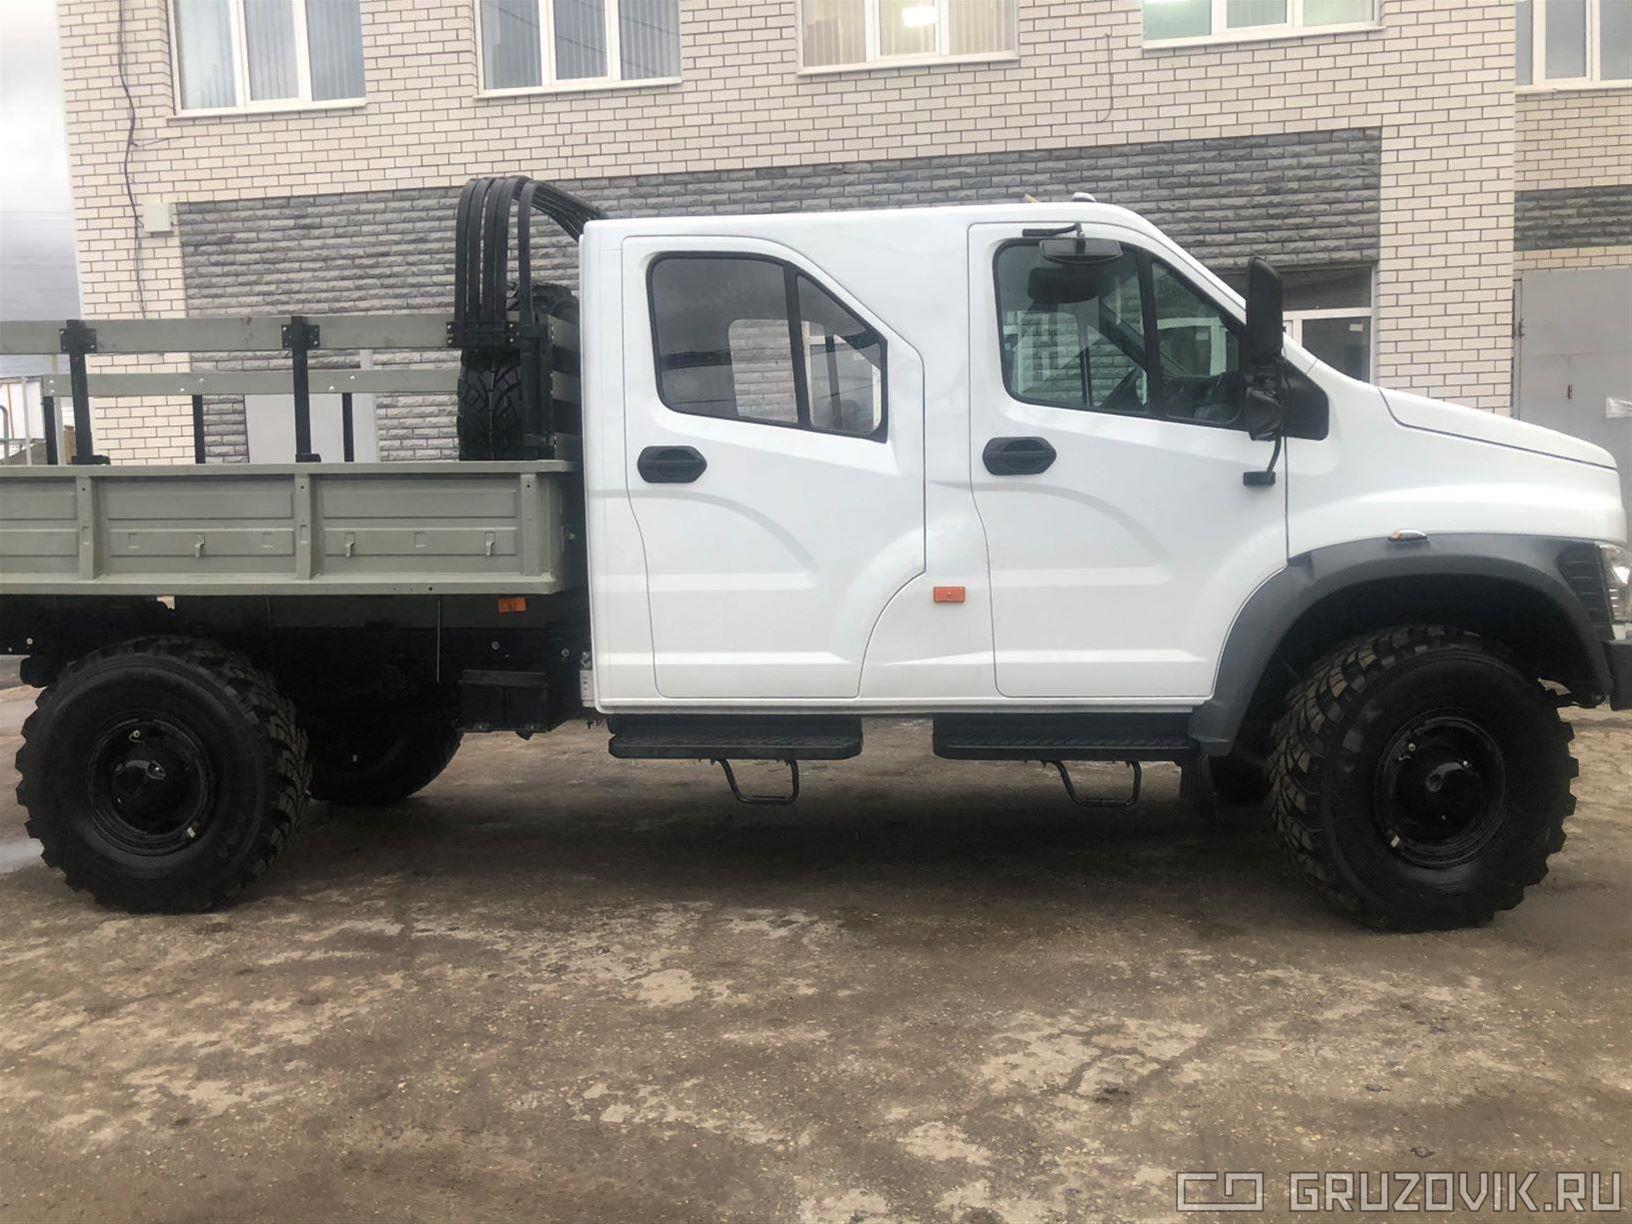 Новый Прицеп Бортовой ГАЗ Садко Next в продаже  на Gruzovik.ru, 331 000 ₽